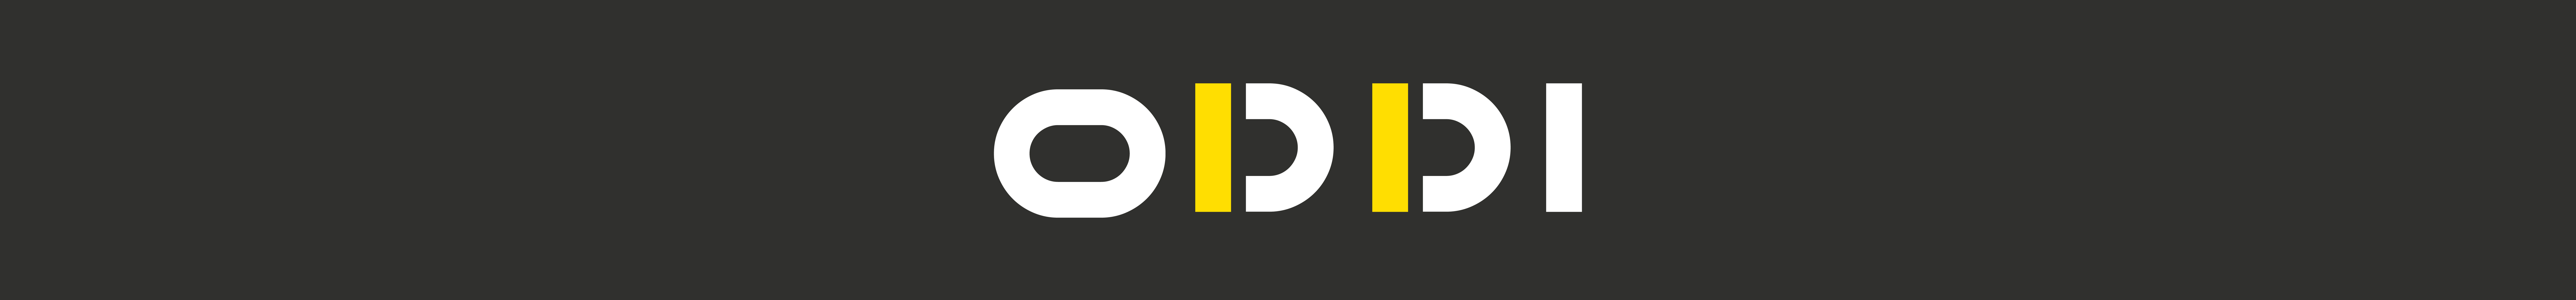 ODDI FERDI's profile banner